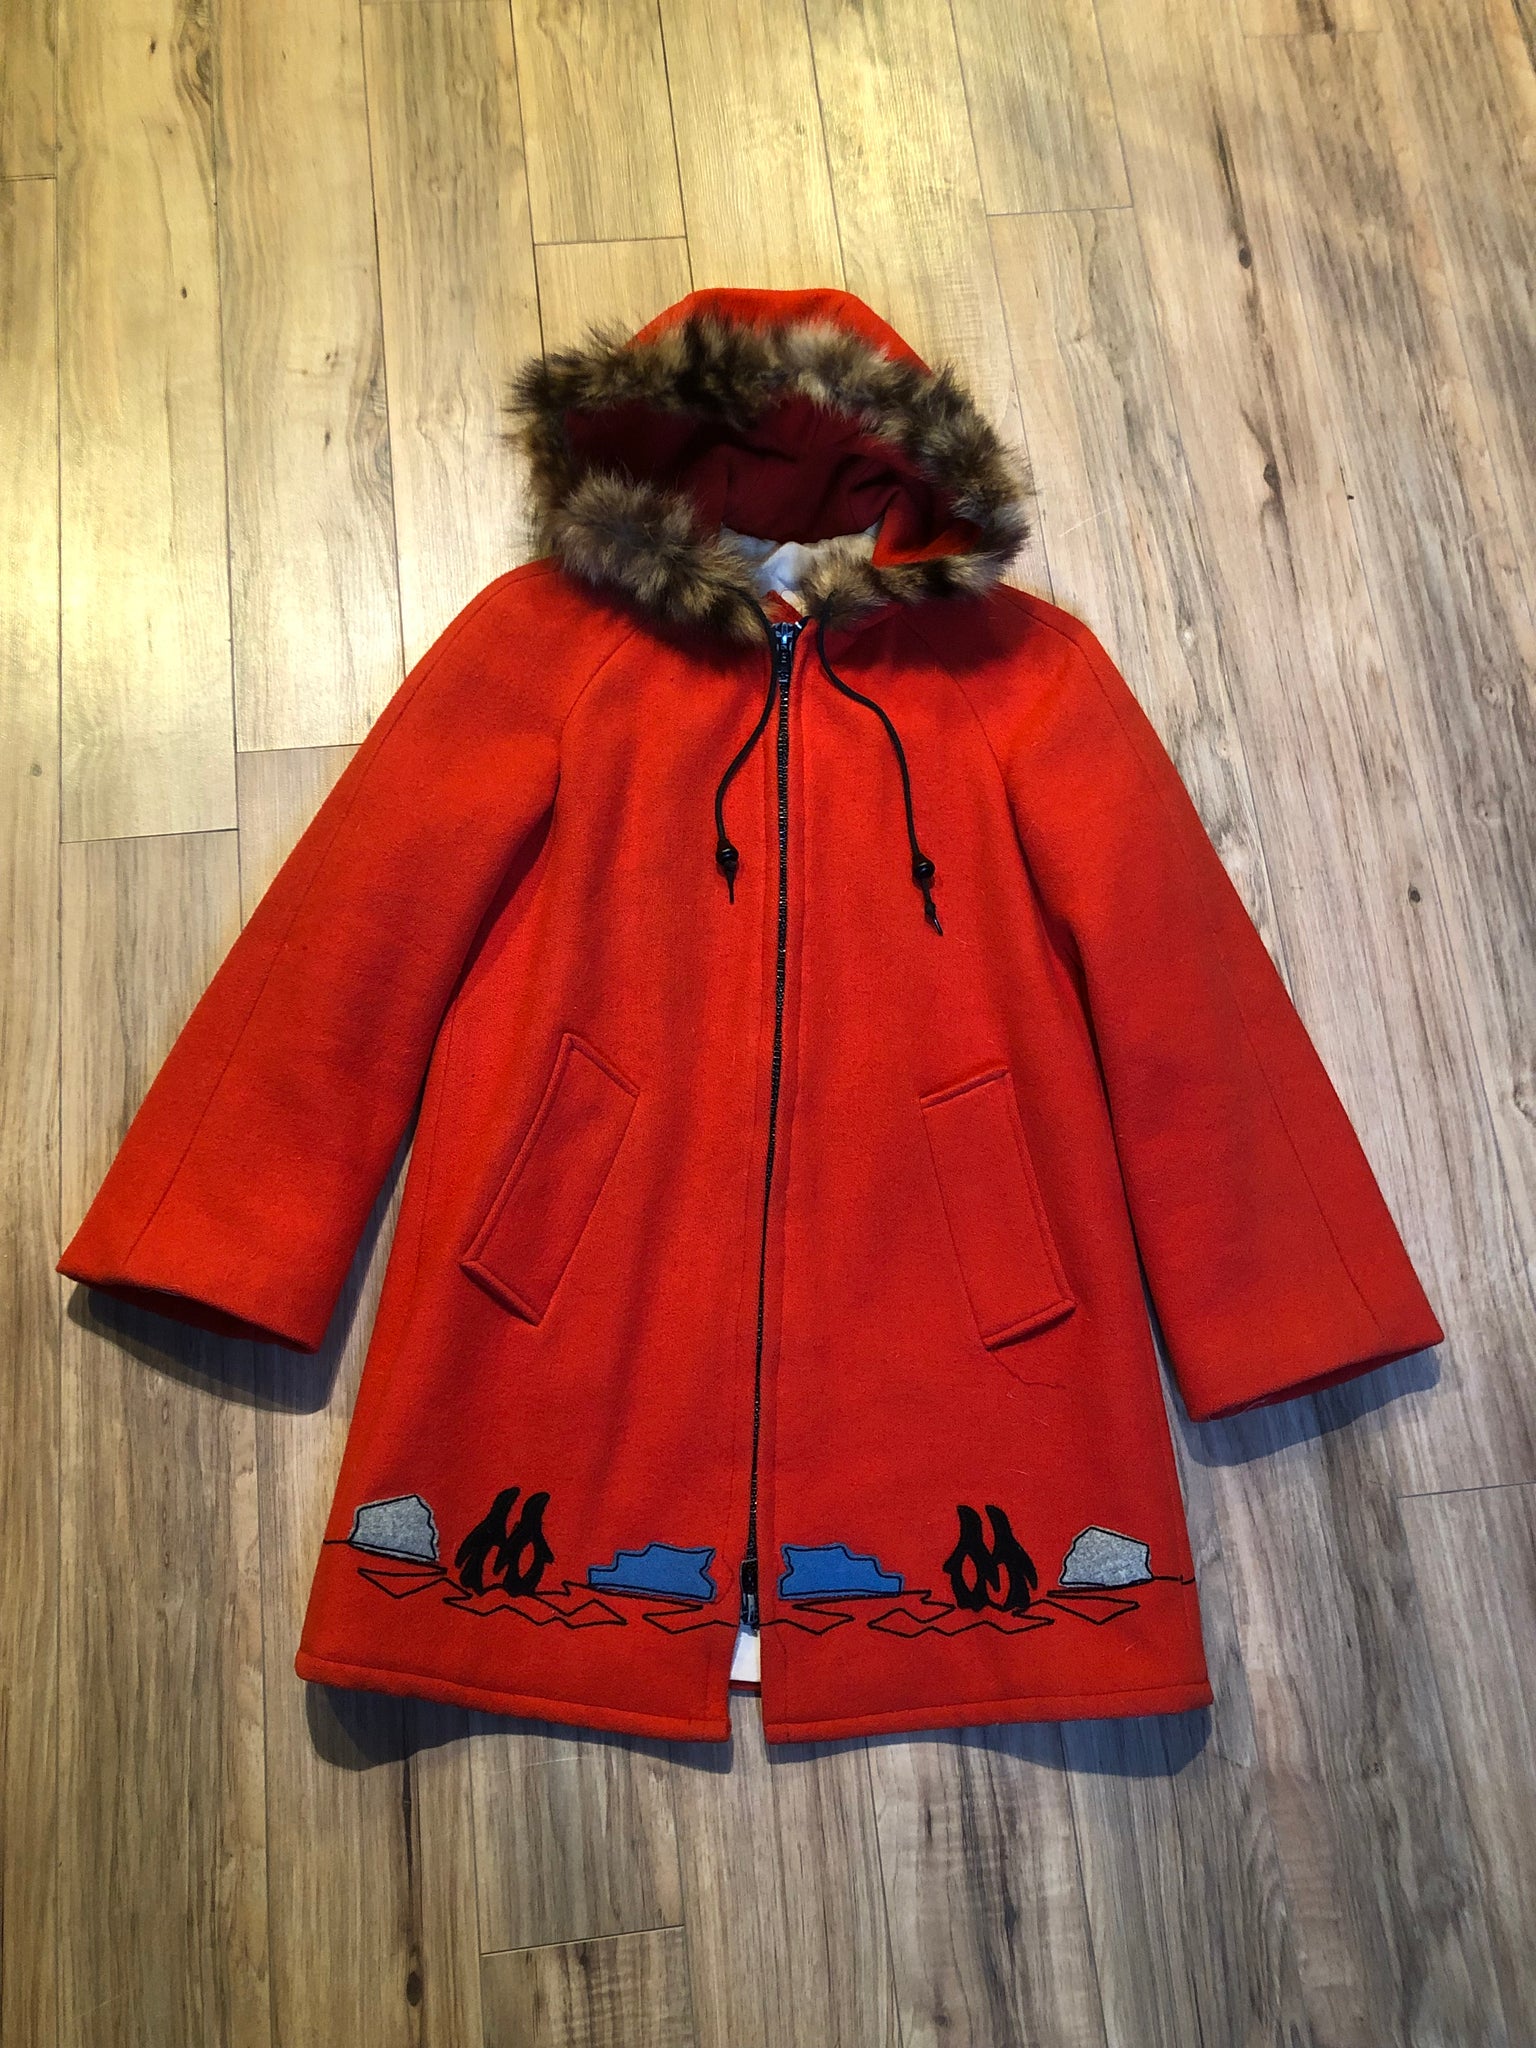 Vintage James Bay Red Wool Northern Parka with Fur Trimmed Hood, Made – KingsPIER  vintage